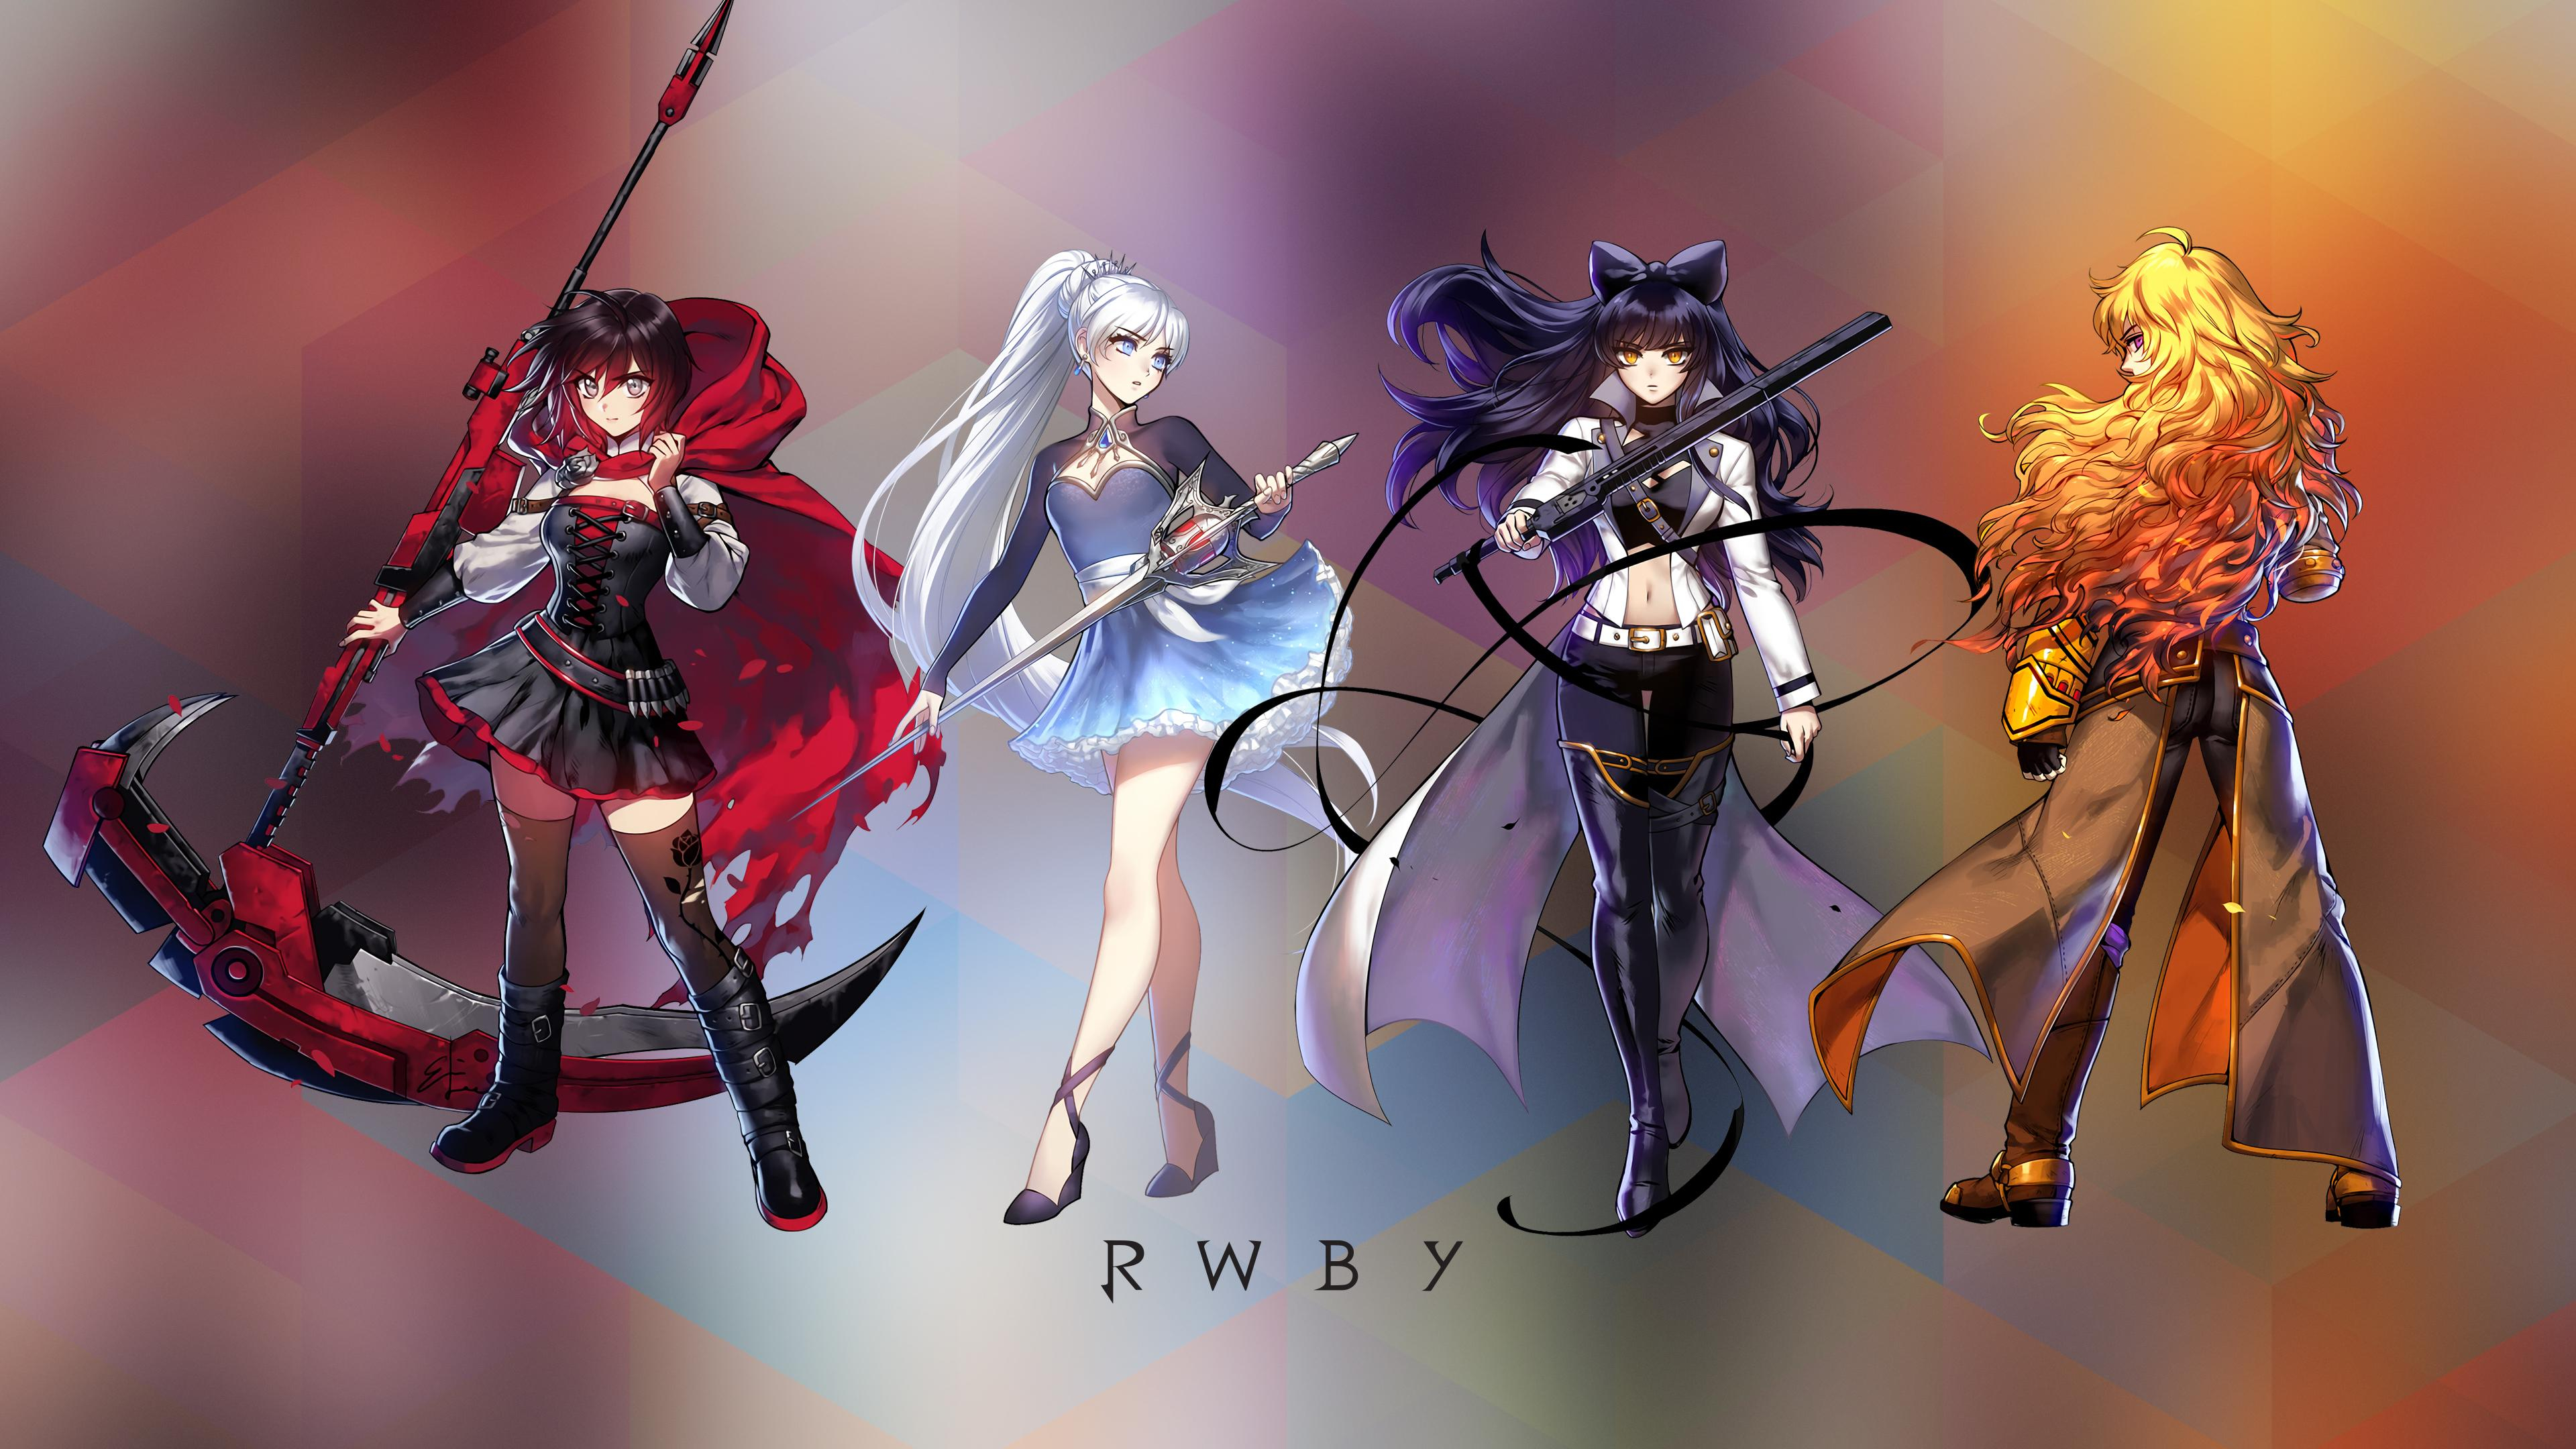 3840x2160 4K RWBY | Rwby wallpaper, Rwby, Rwby anime